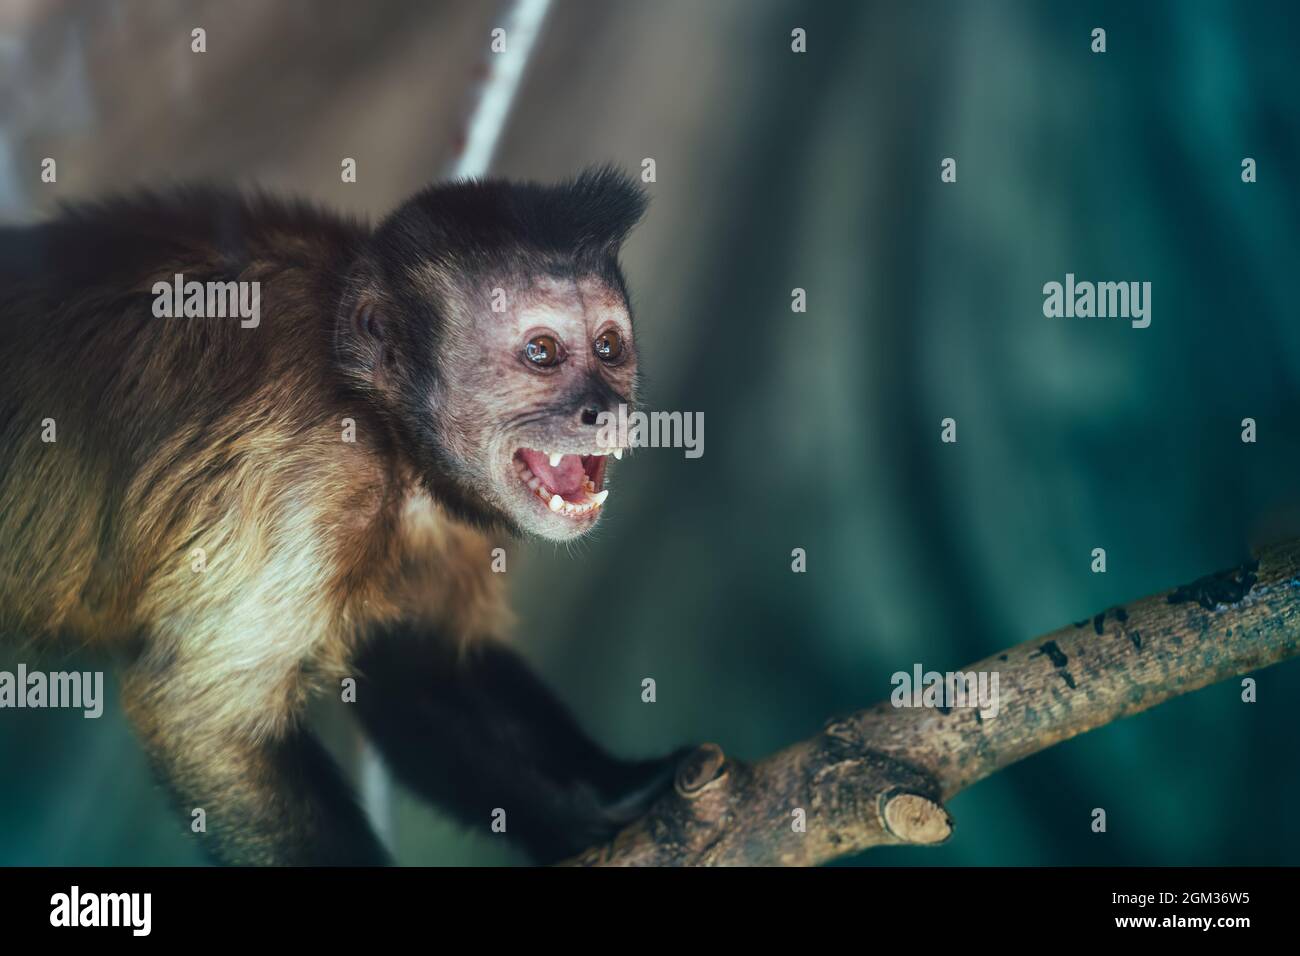 Cute monkey scream or shout. Monkey portrait. Stock Photo